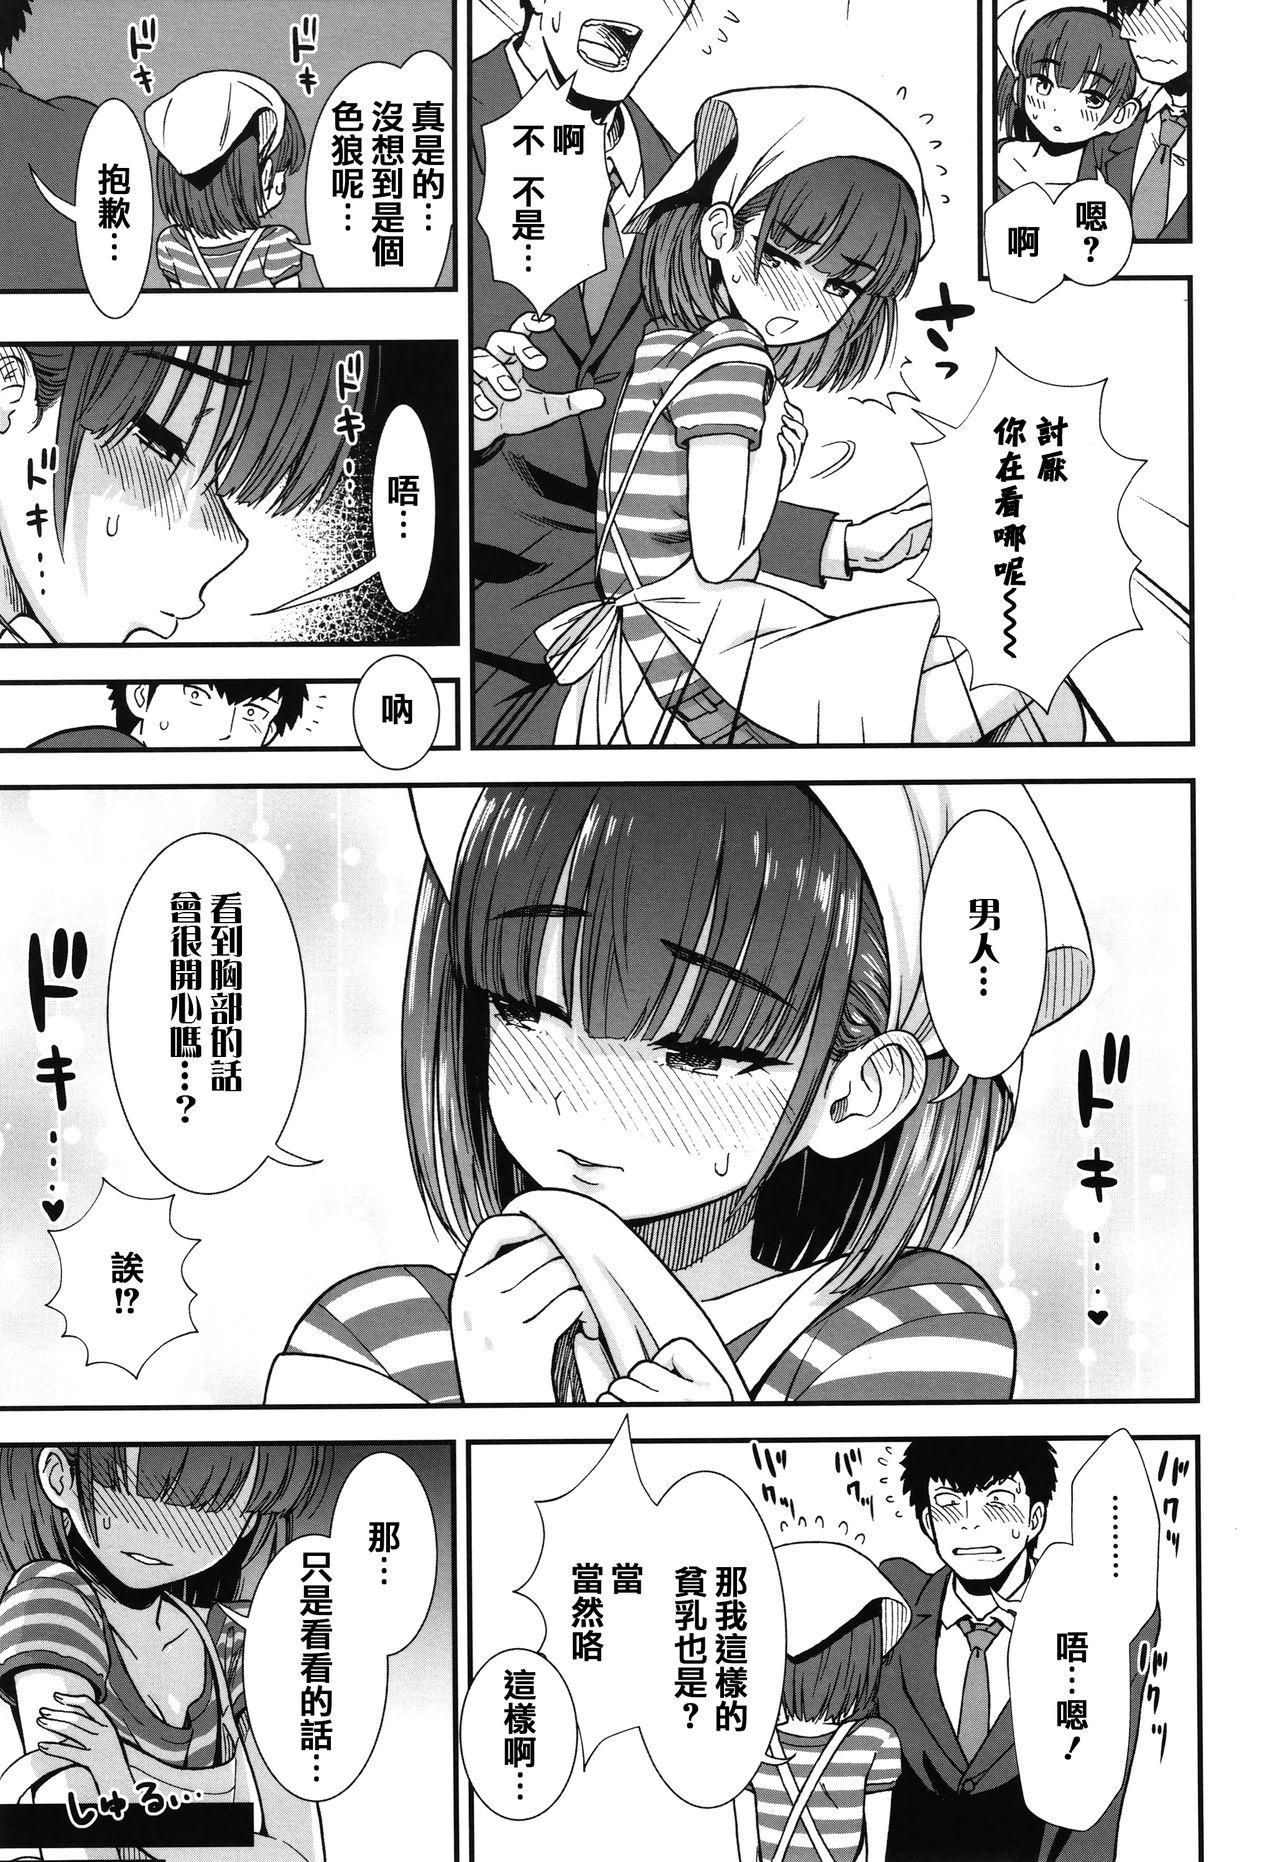 Eating Ore wa Kuzu dakara koso Sukuwareru Kenri ga Aru! Exposed - Page 11